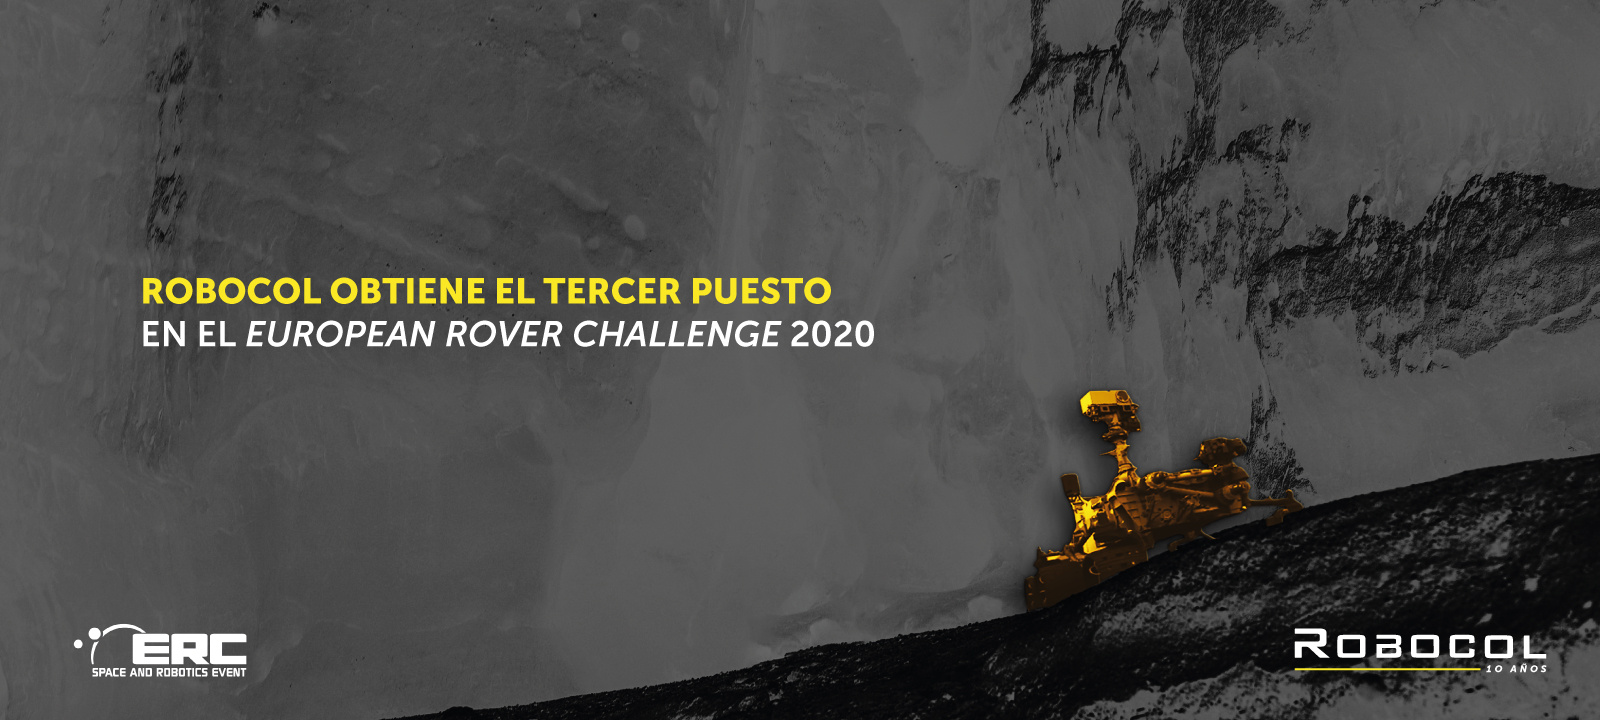 Robocol obtiene el tercer puesto en el European Rover Challenge 2020